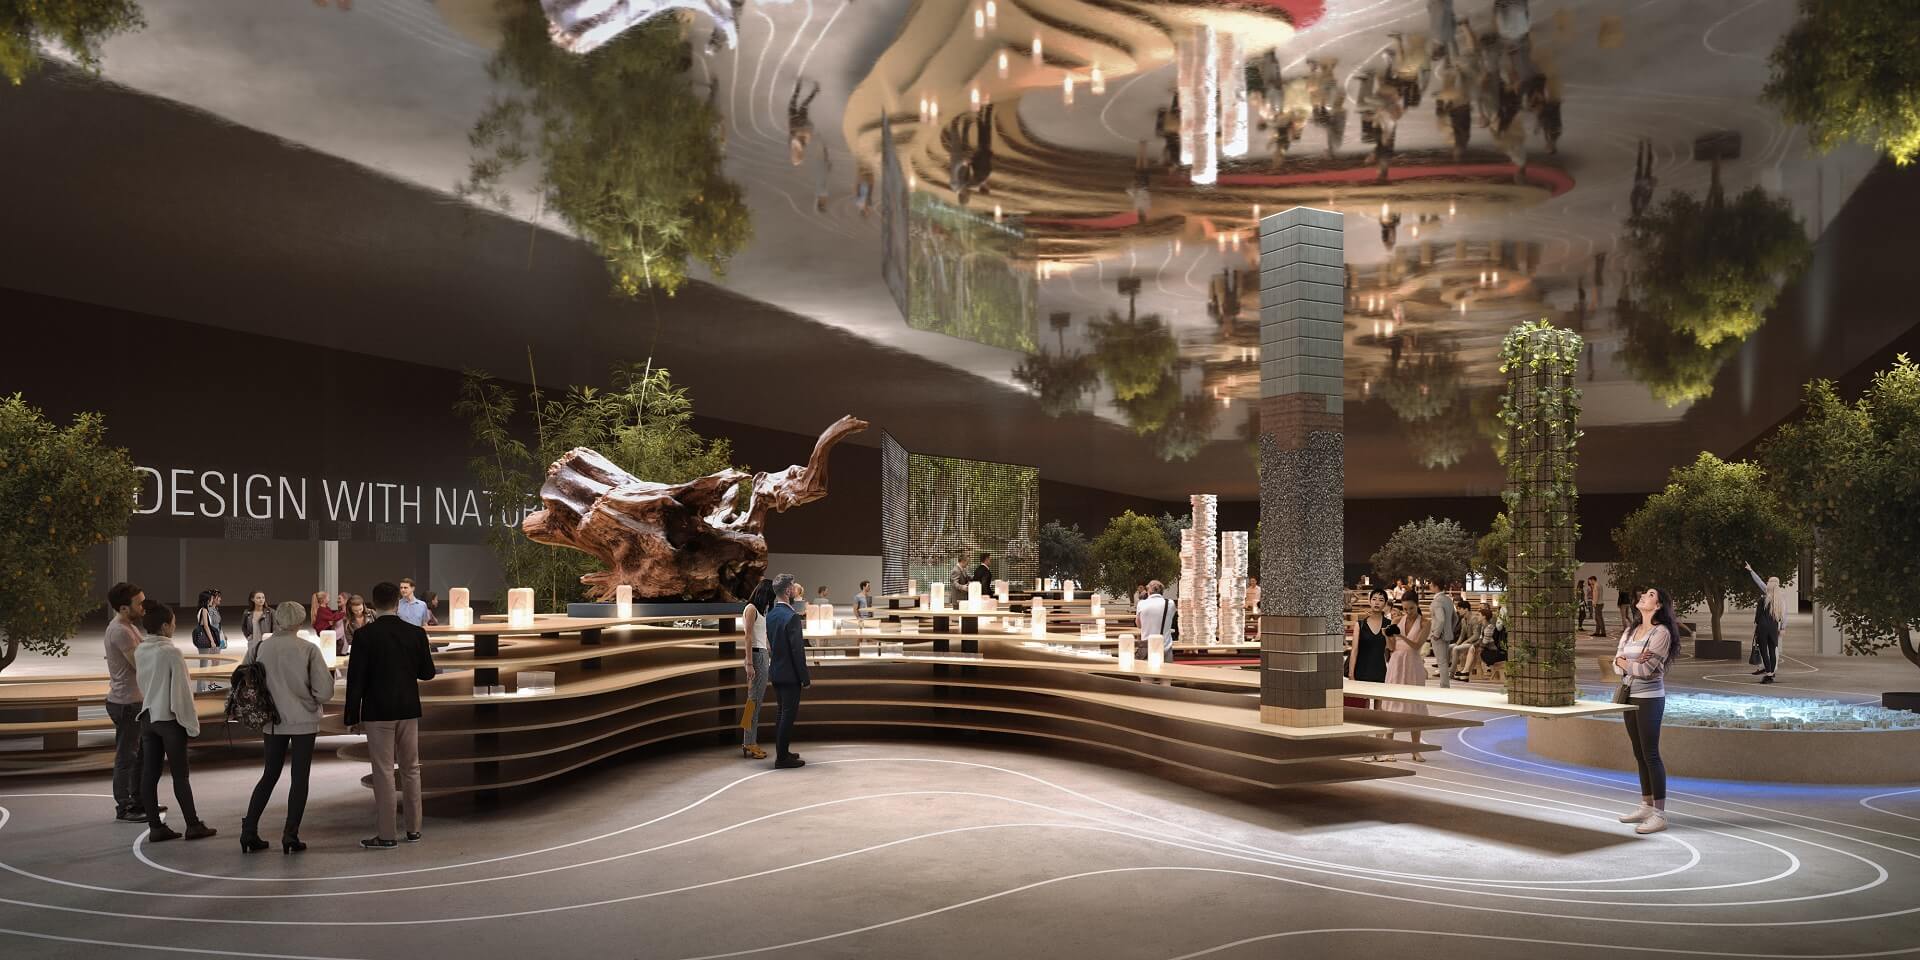 Salone del Mobile 2022 Design with Nature ©Mario Cucinella Architects